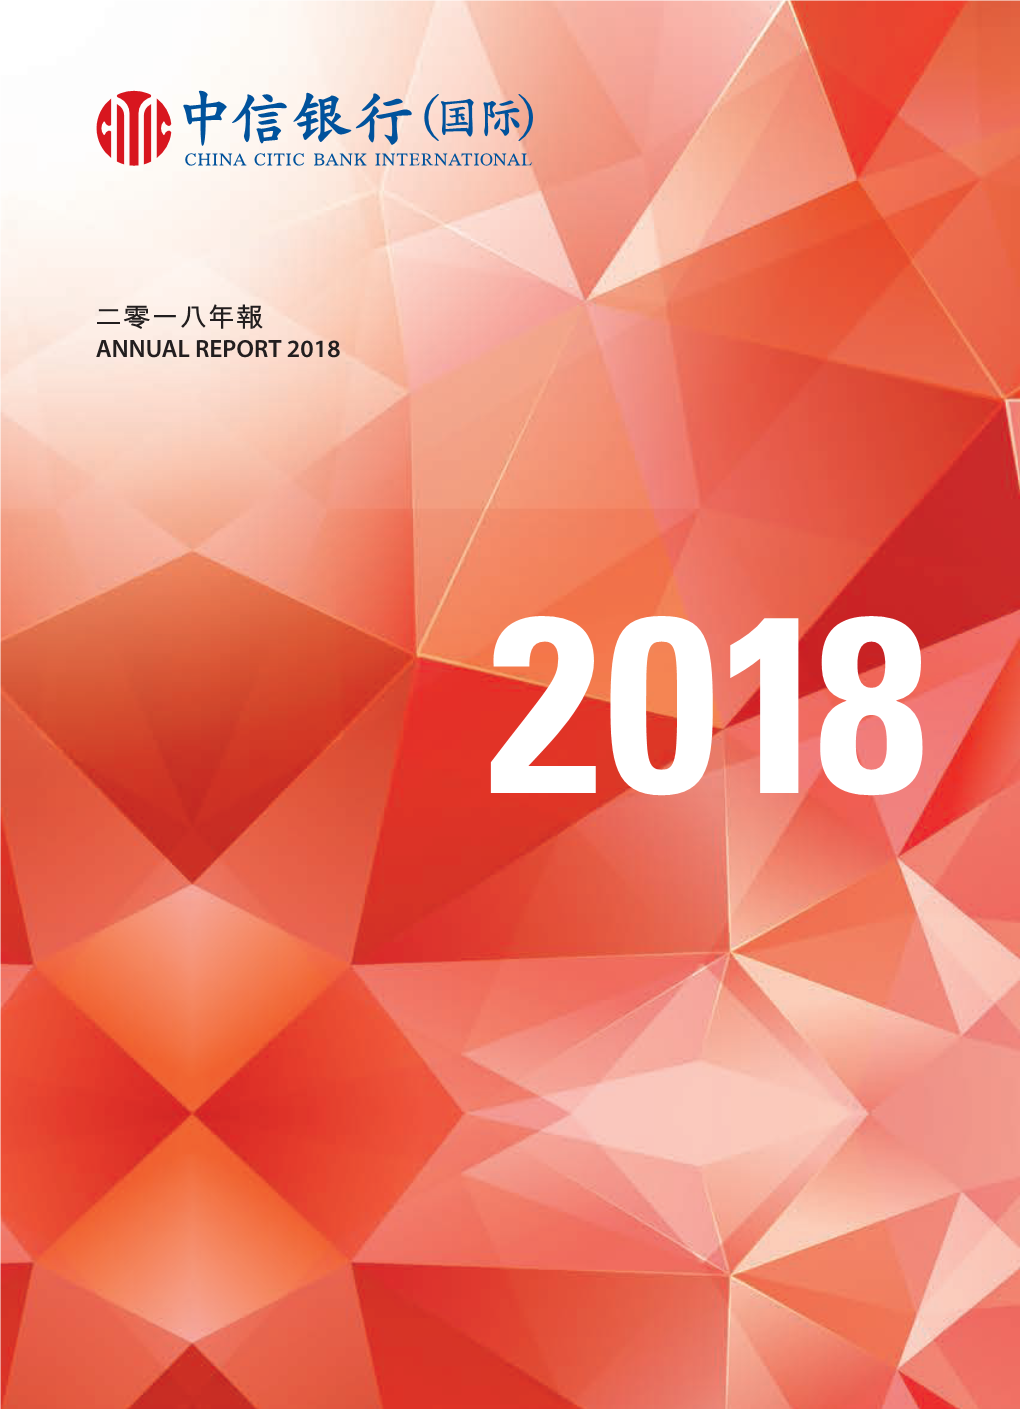 二零一八年報 Annual Report 2018